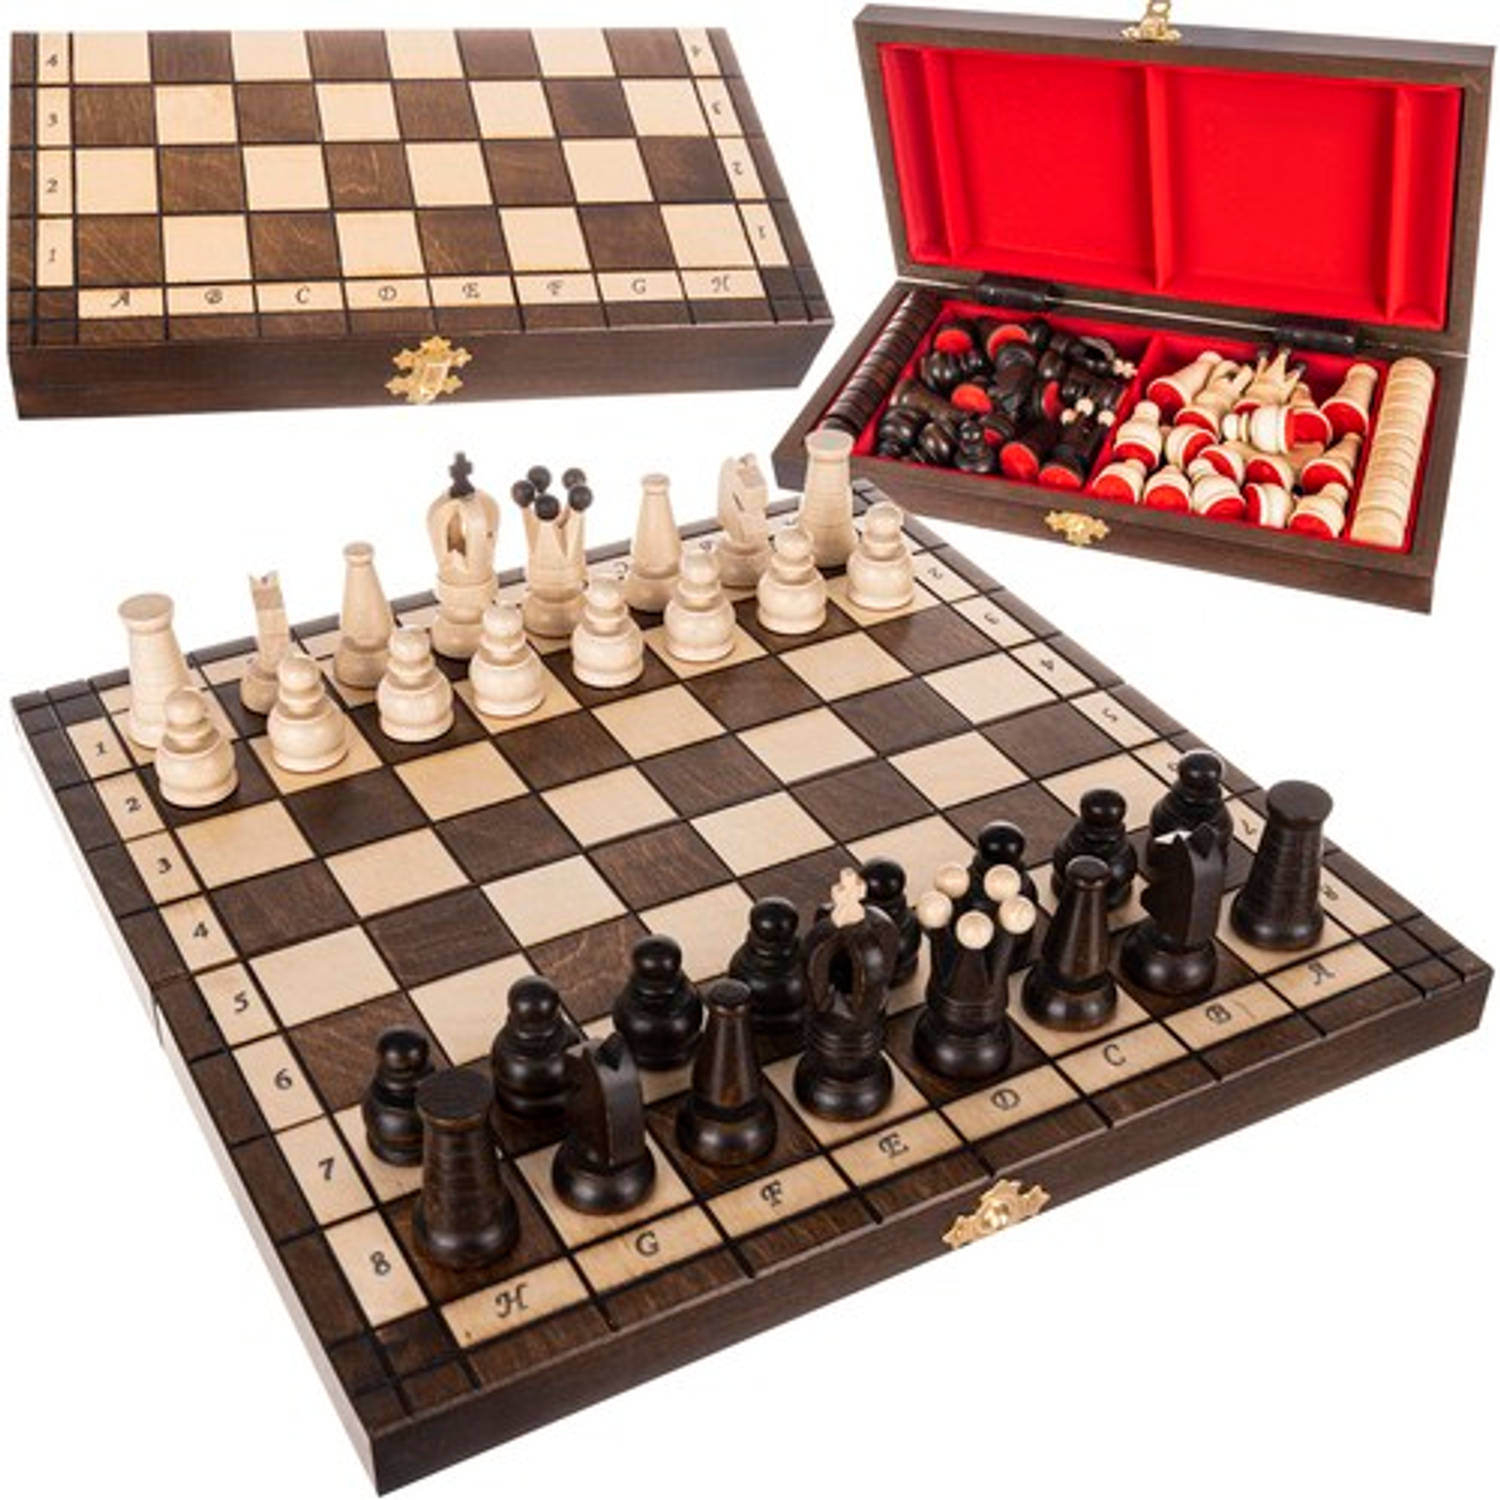 2 in 1 opvouwbaar houten schaakbord ook geschikt voor dammen inclusief schaakstukken en dam schijven